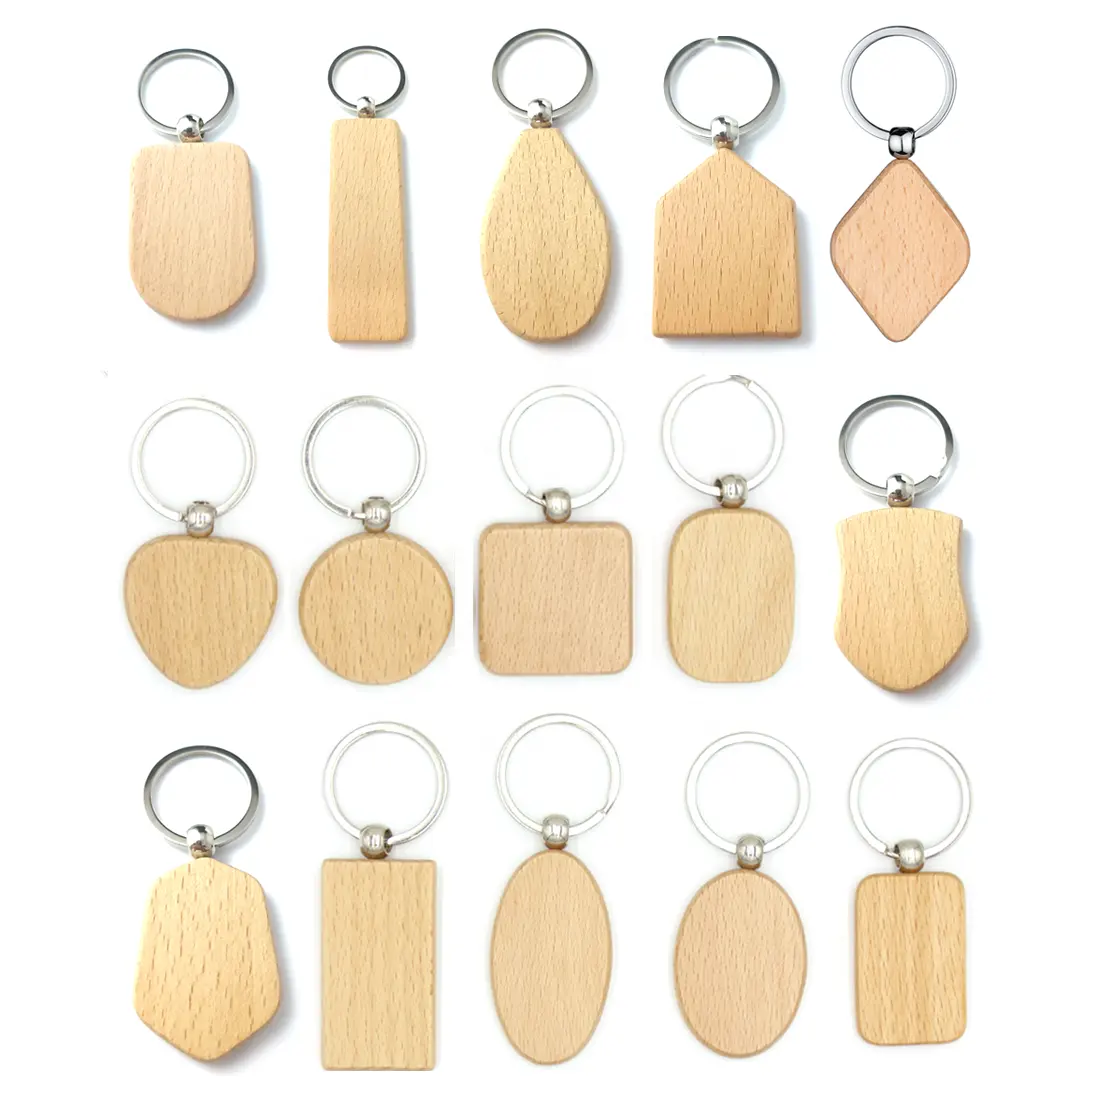 DIY leere runde Holz scheibe für Schlüssel bund zum Gravieren von Holz Schlüssel bund Holz Handwerk Schlüssel anhänger